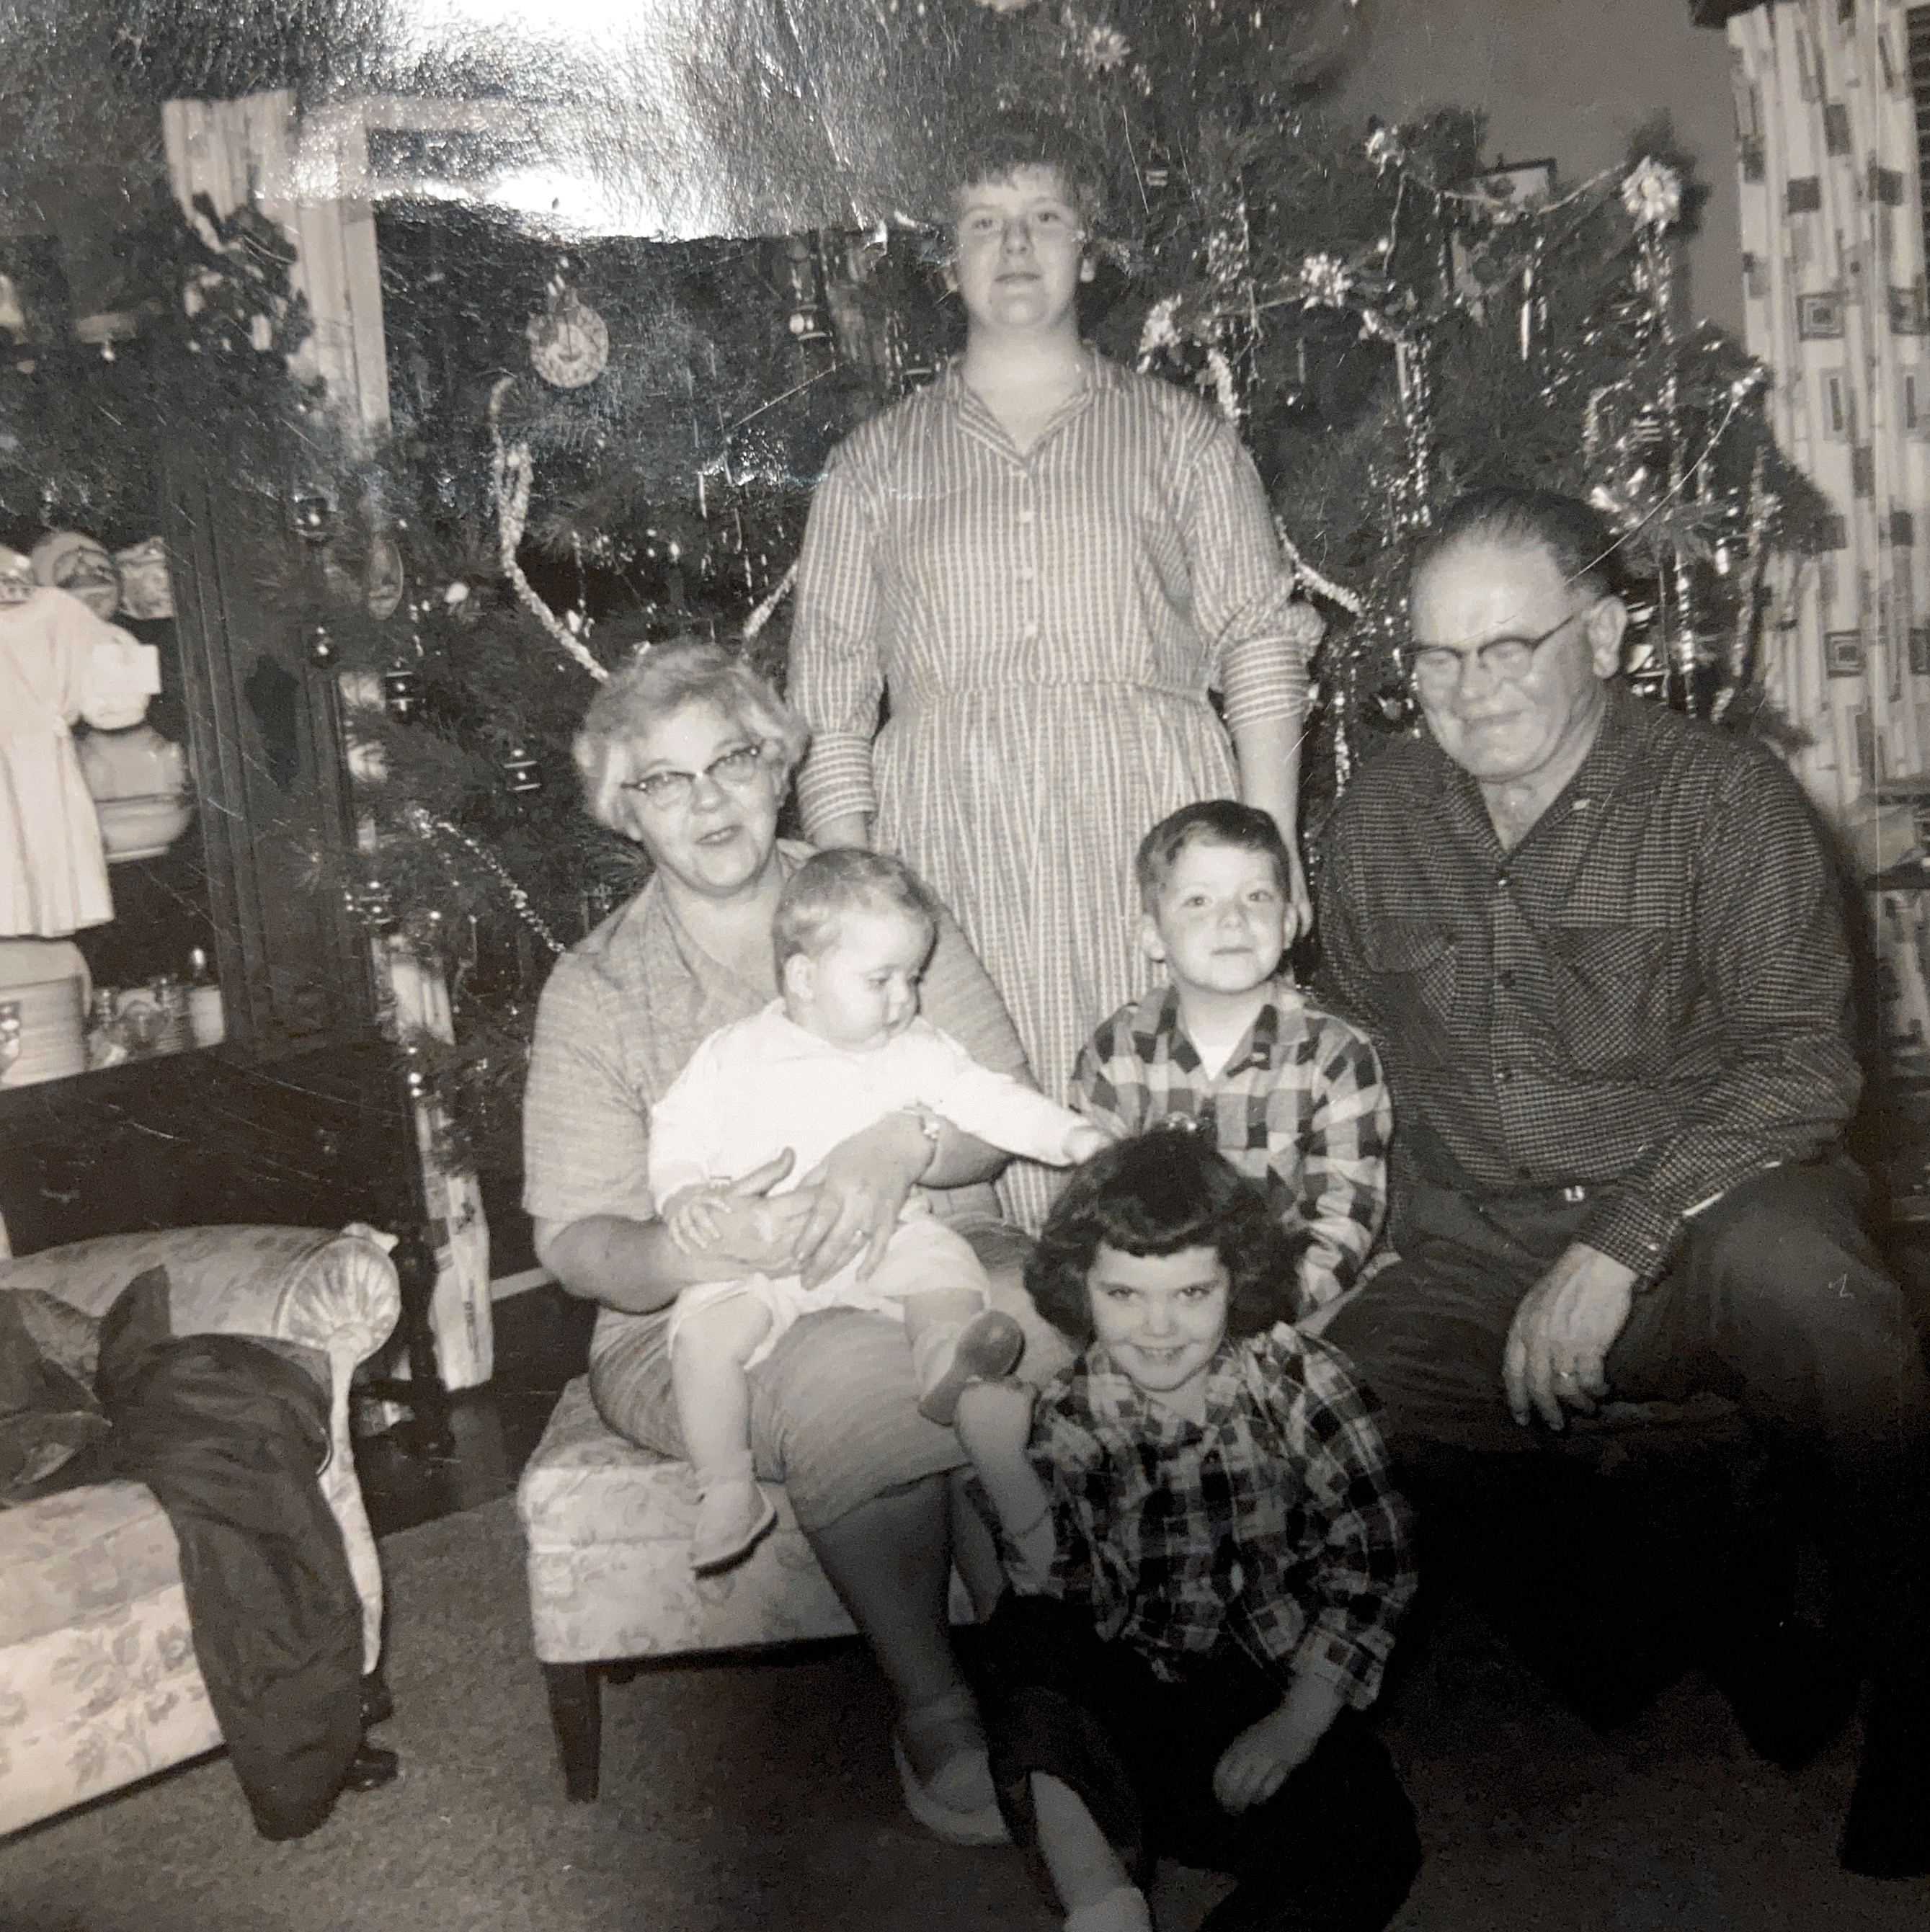 Lucy, Paul, Kathy, Wayne, W. R., and Vicki
Christmas 1959